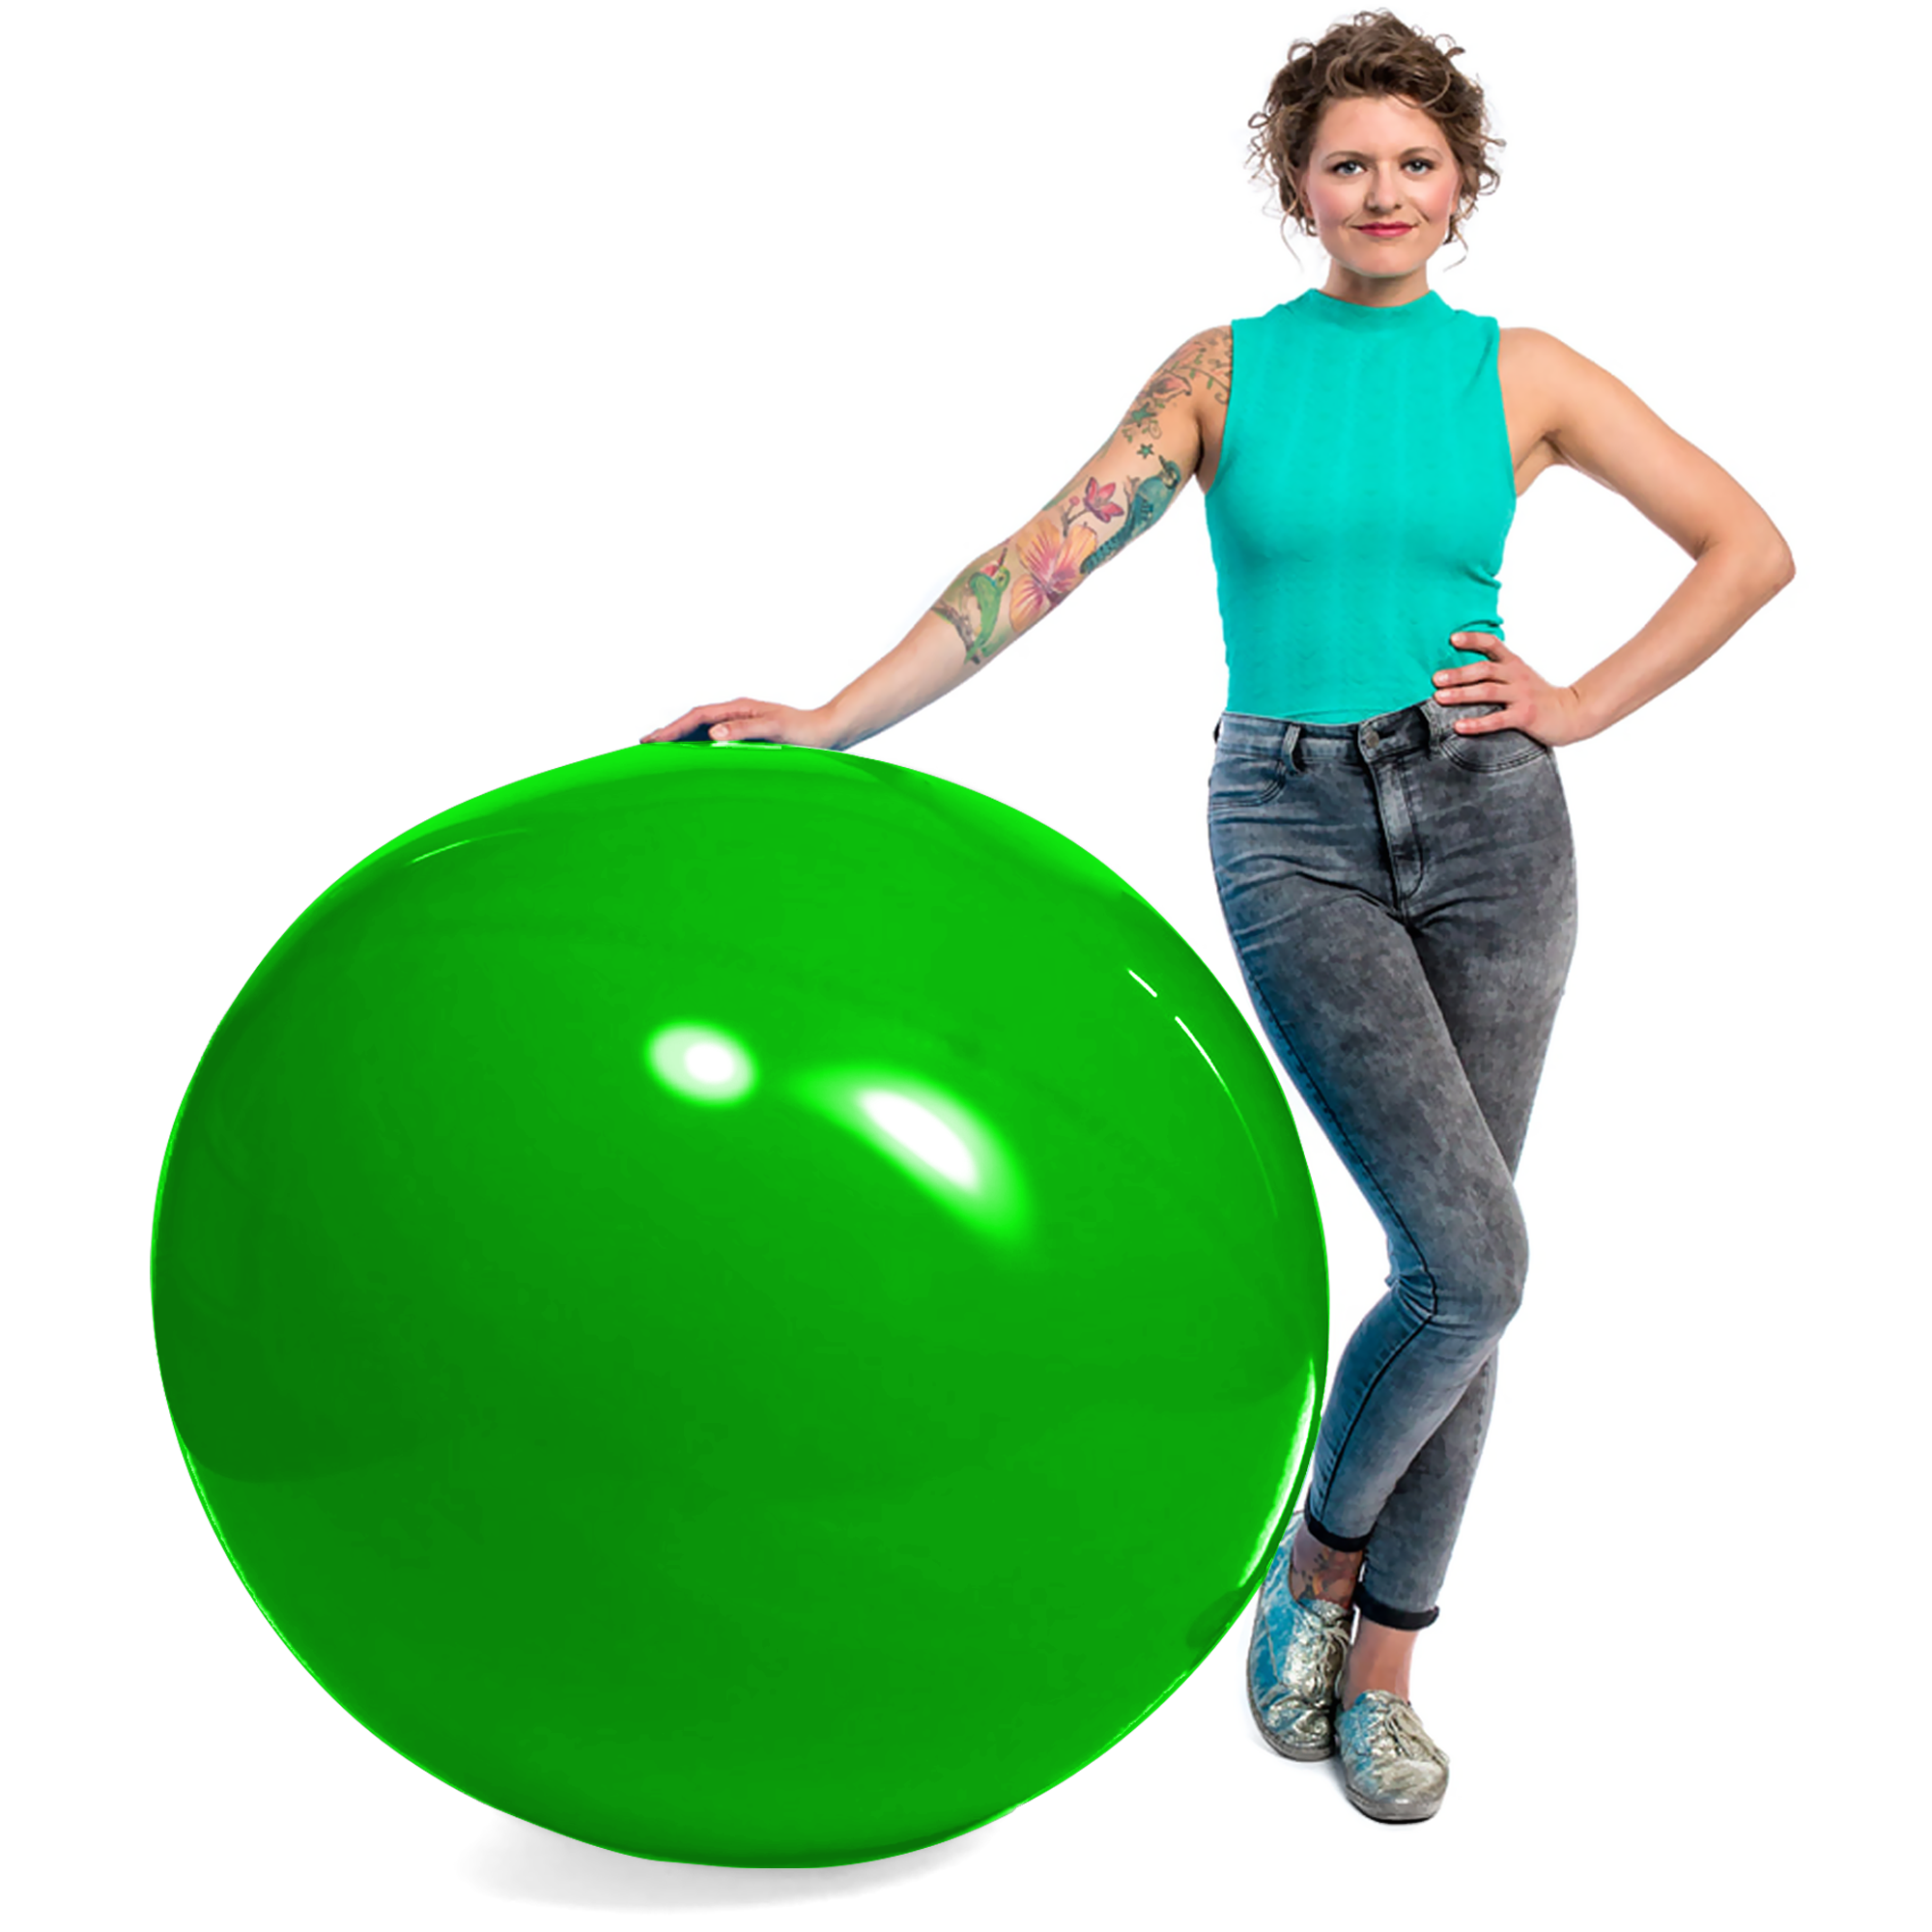 Globos verdes de 12 pulgadas (3000 pzas) - Tilco Balloons